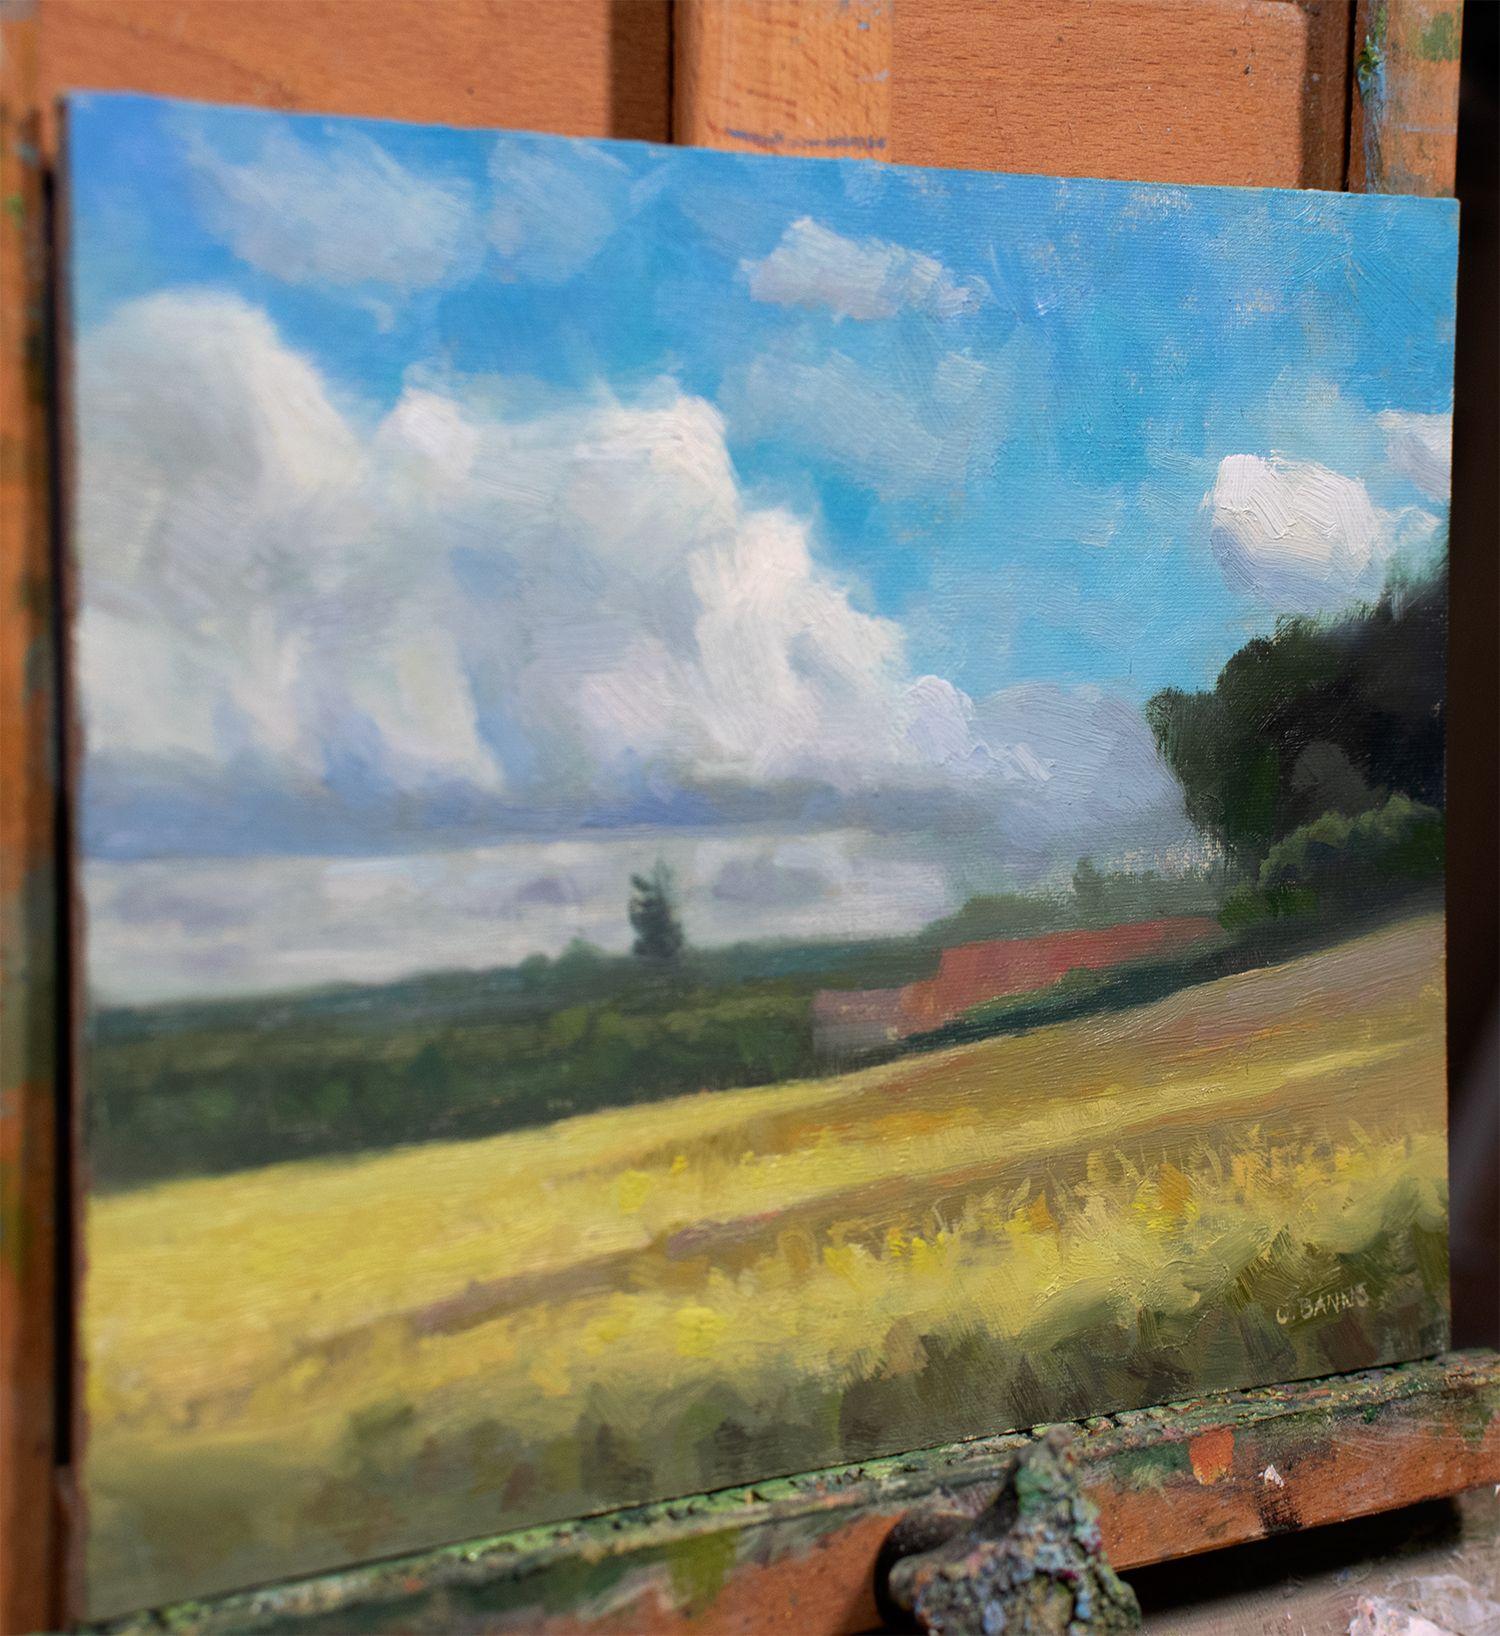 Au bord de la rivière, à la limite de ma Townes, se trouve un petit Studio ayant appartenu à l'artiste Jean-Baptiste-Camille Corot. Il prenait une partie de ses étés pour venir peindre dans cet endroit reculé de l'ouest de la France.  Juste en face,